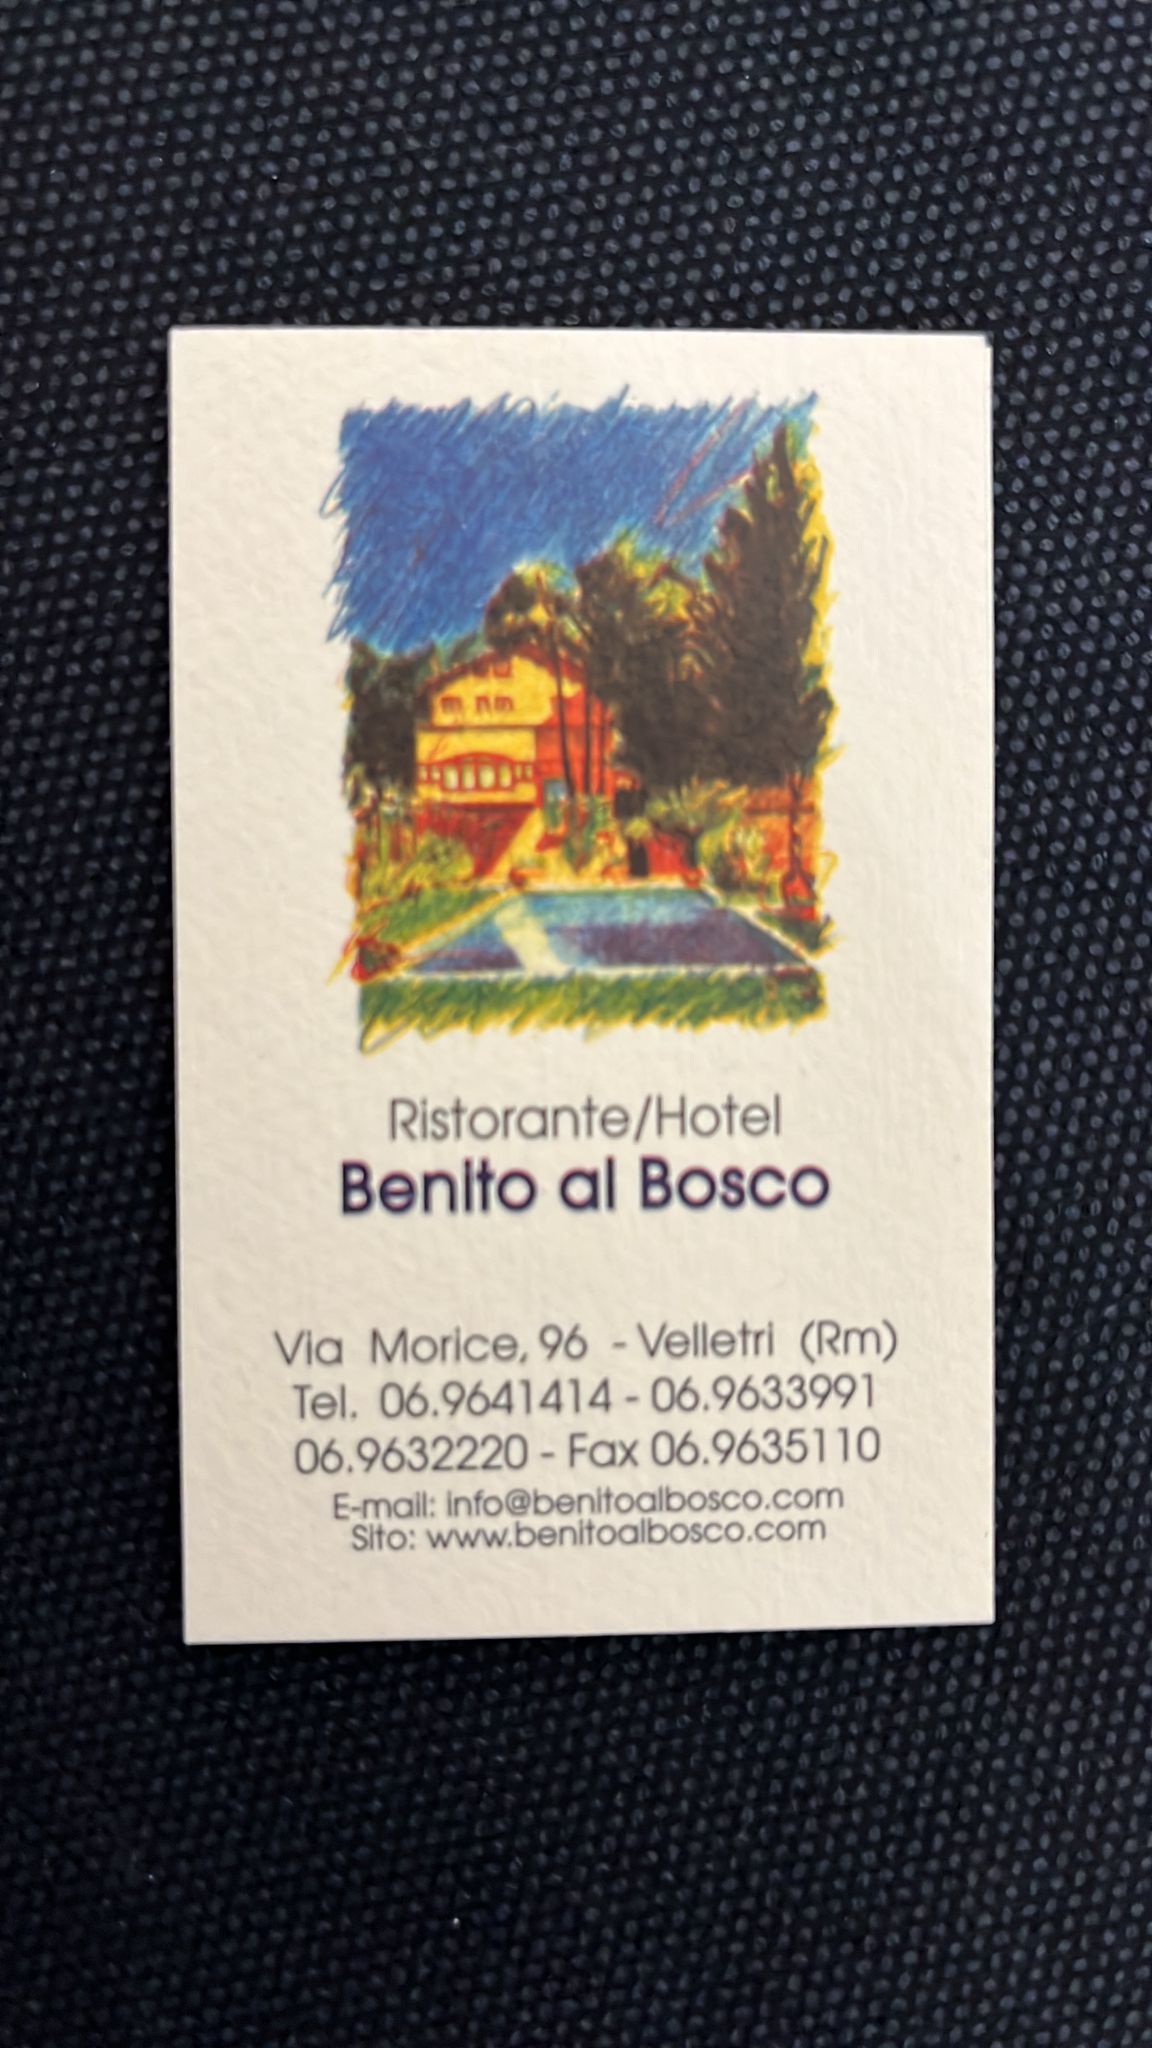 Ristorante Hotel Benito al Bosco